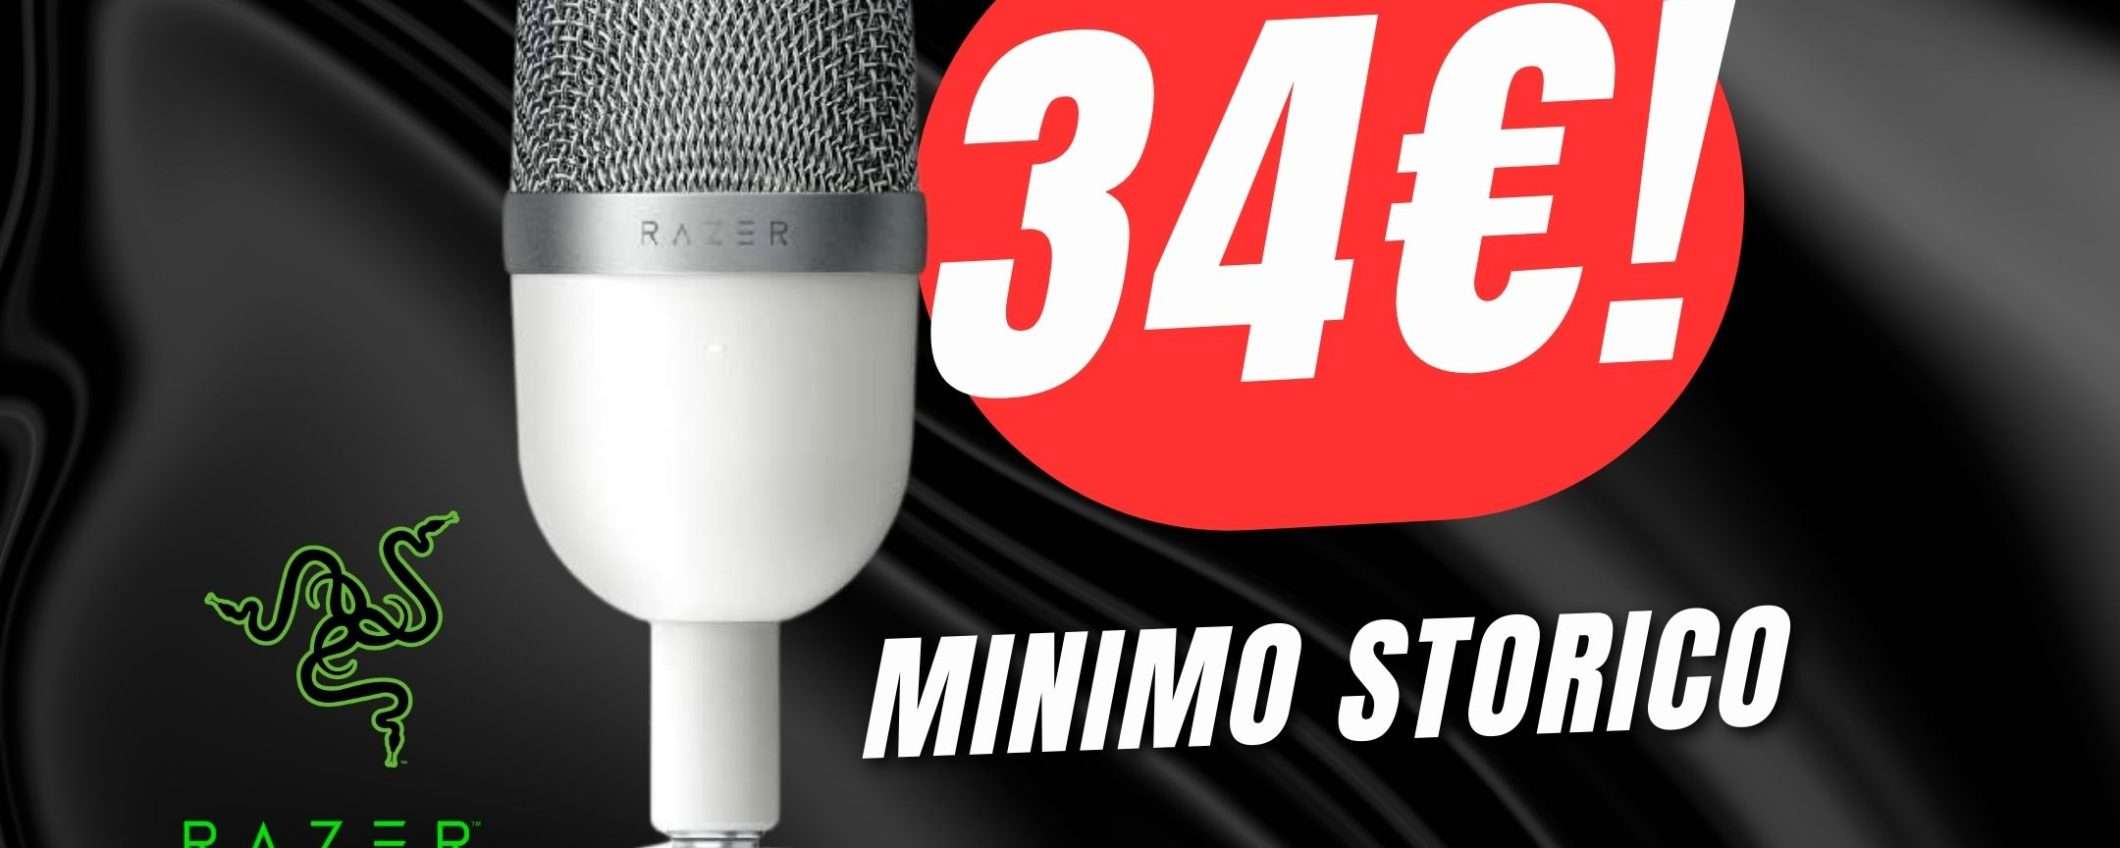 MINIMO STORICO per il Microfono a Condensatore di Razer (solo 34€!)